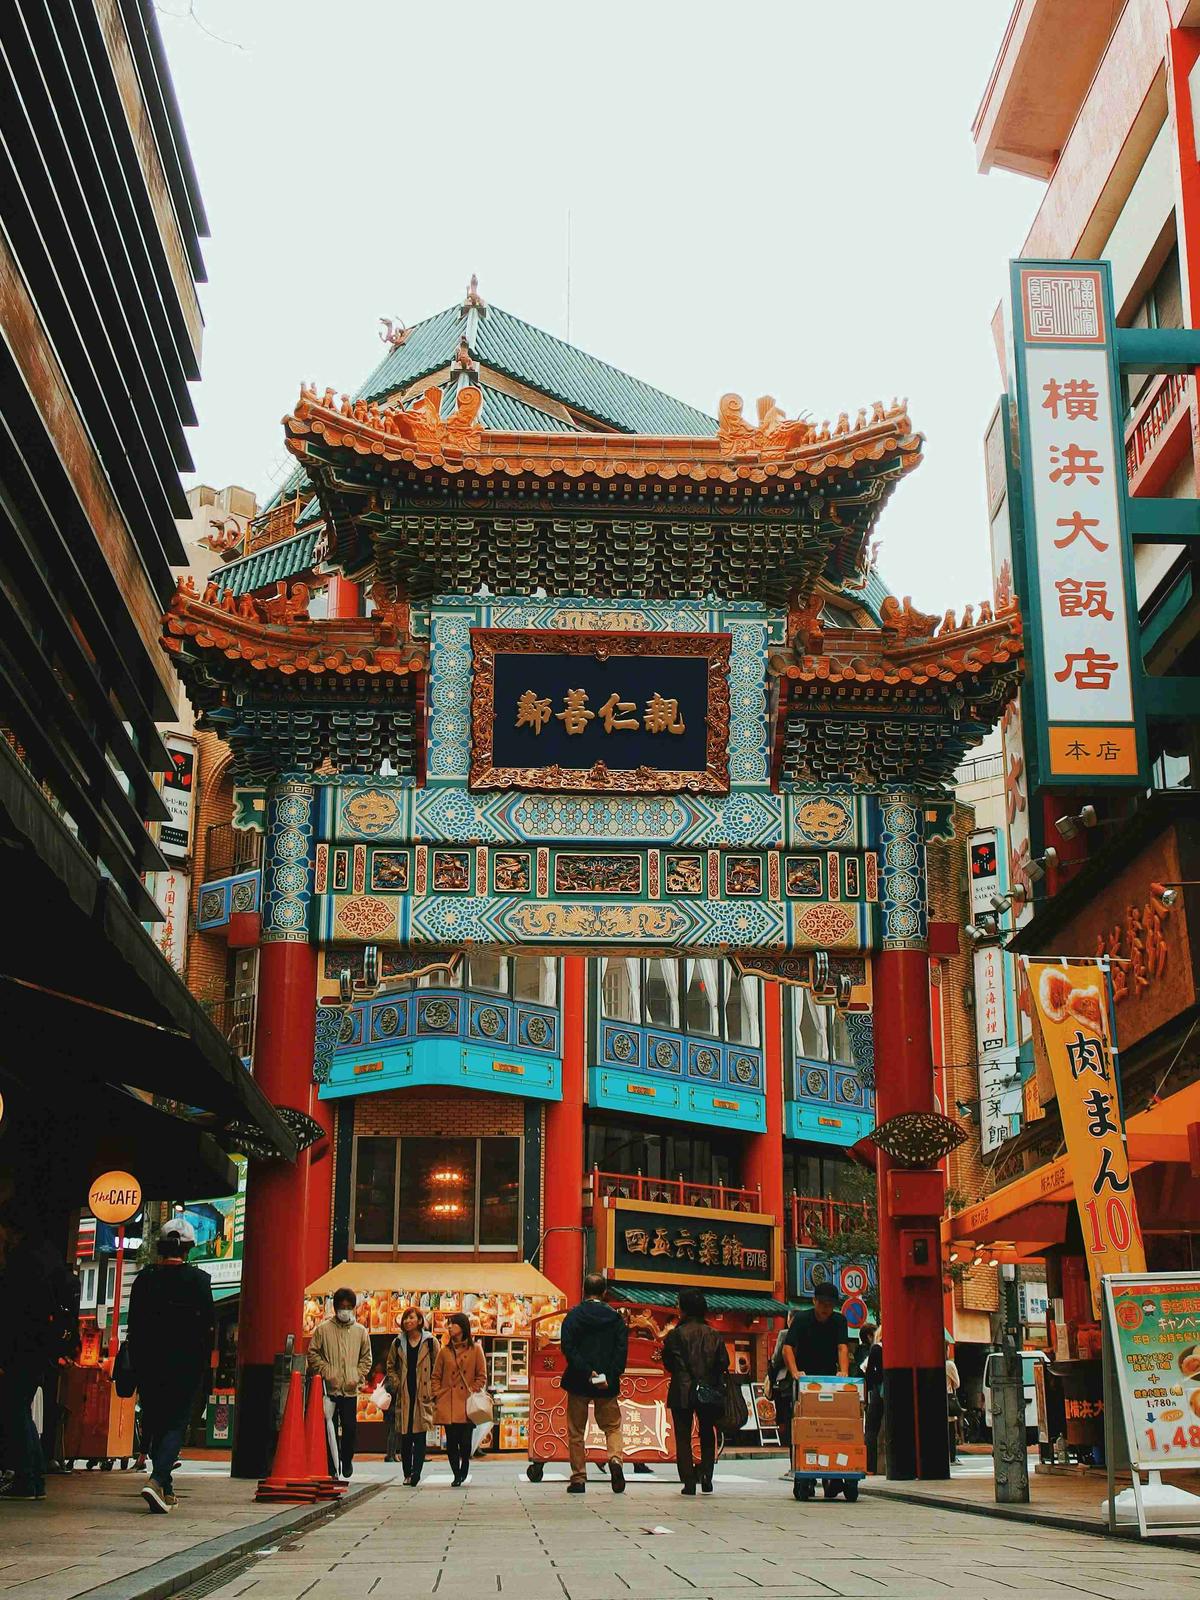 Gyvybingas įėjimas į kinų kvartalą su pėstaisiais